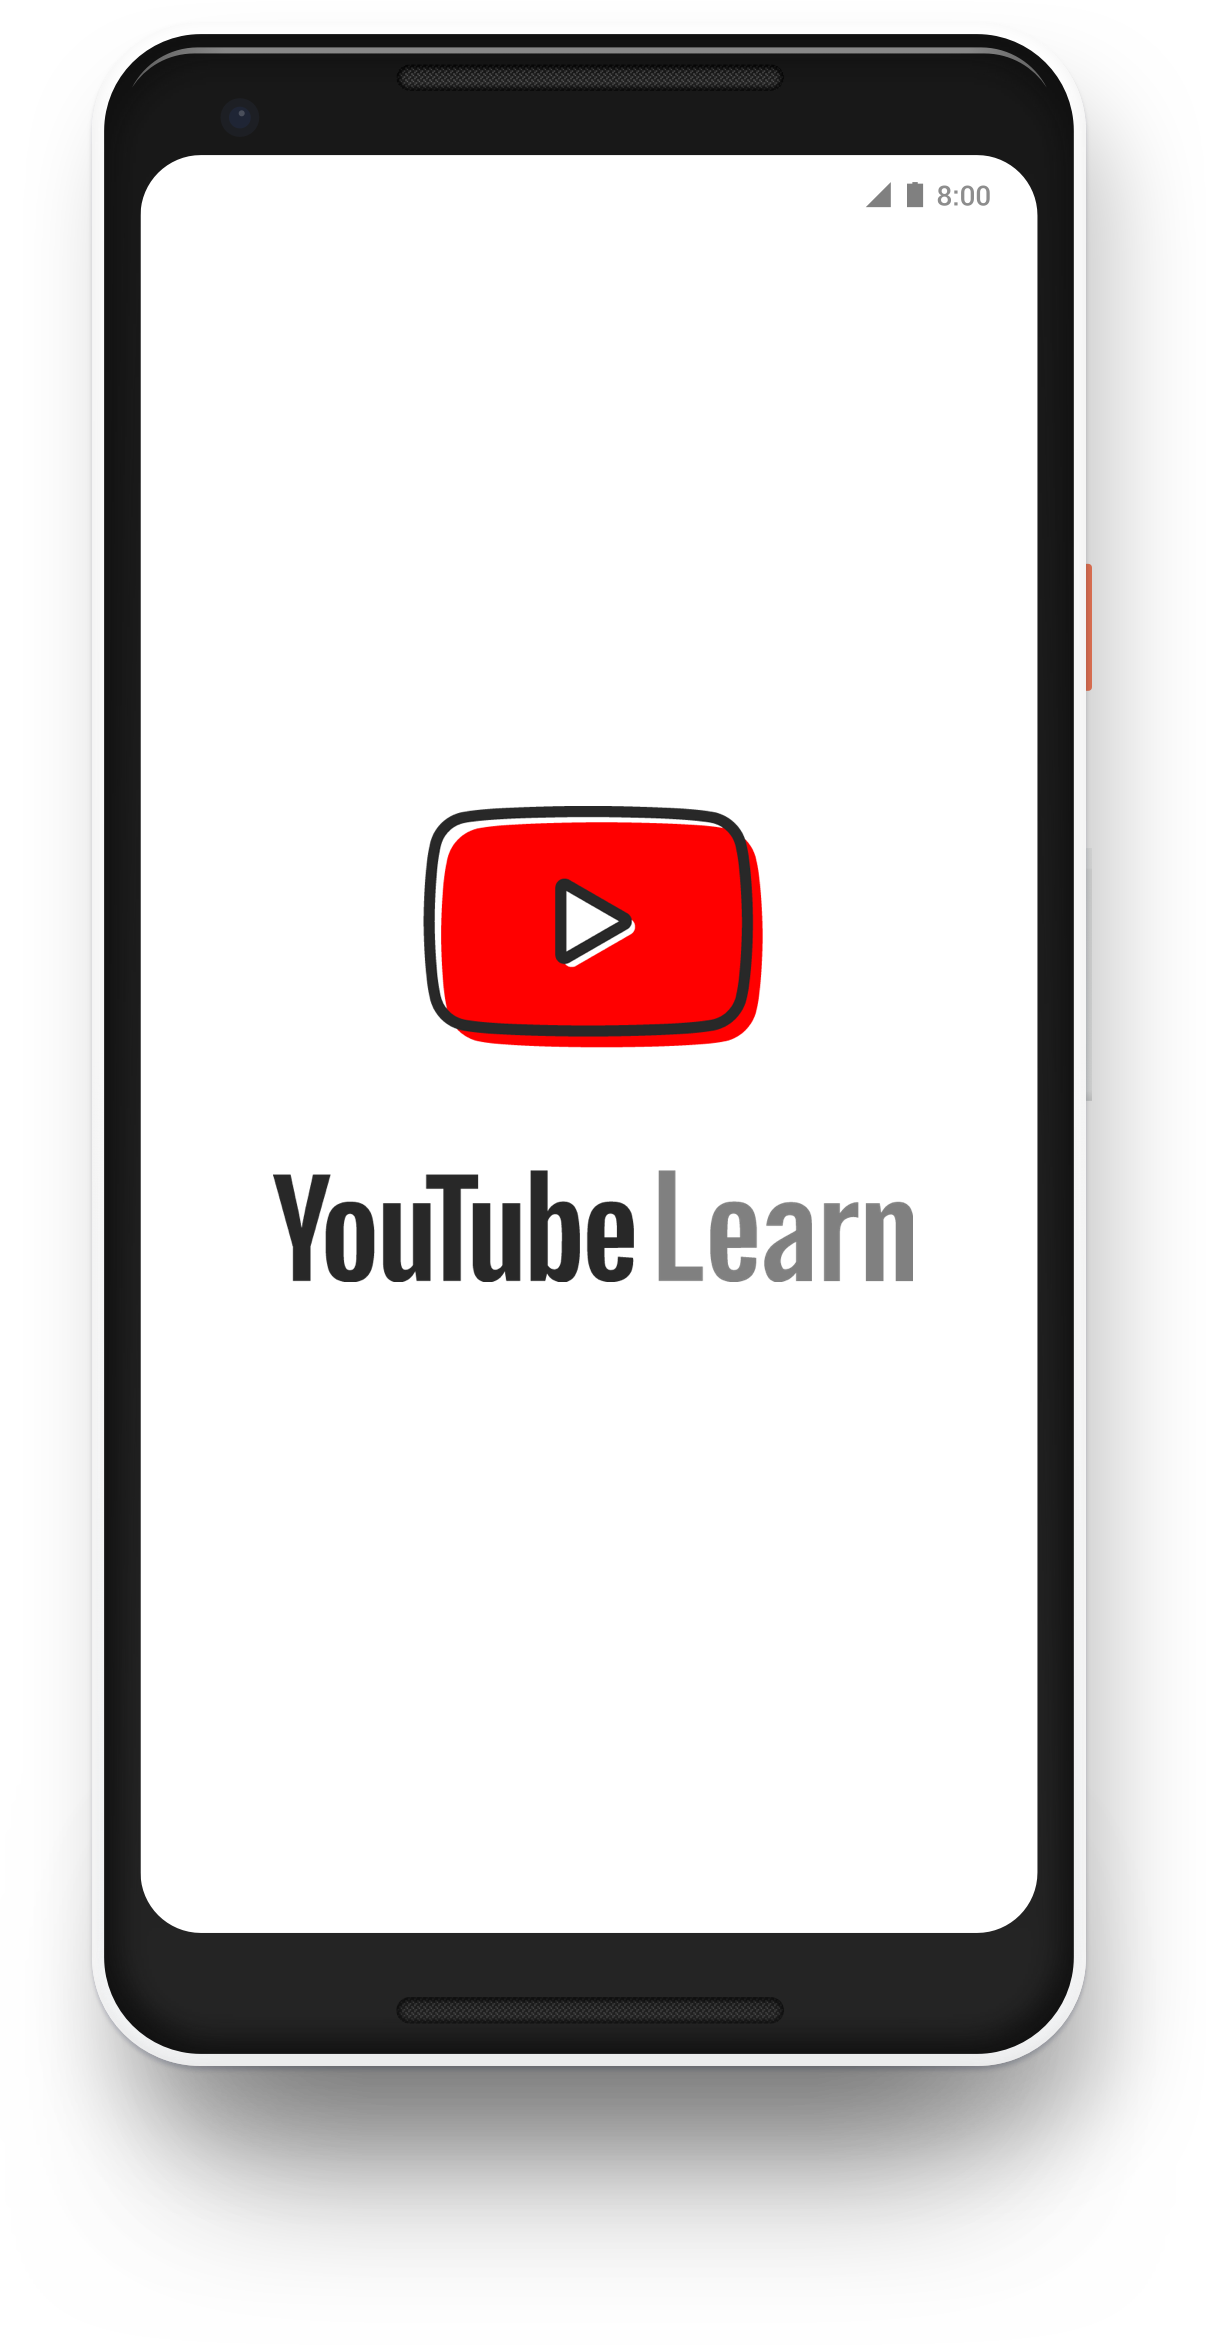 YouTube Learn Home Screen